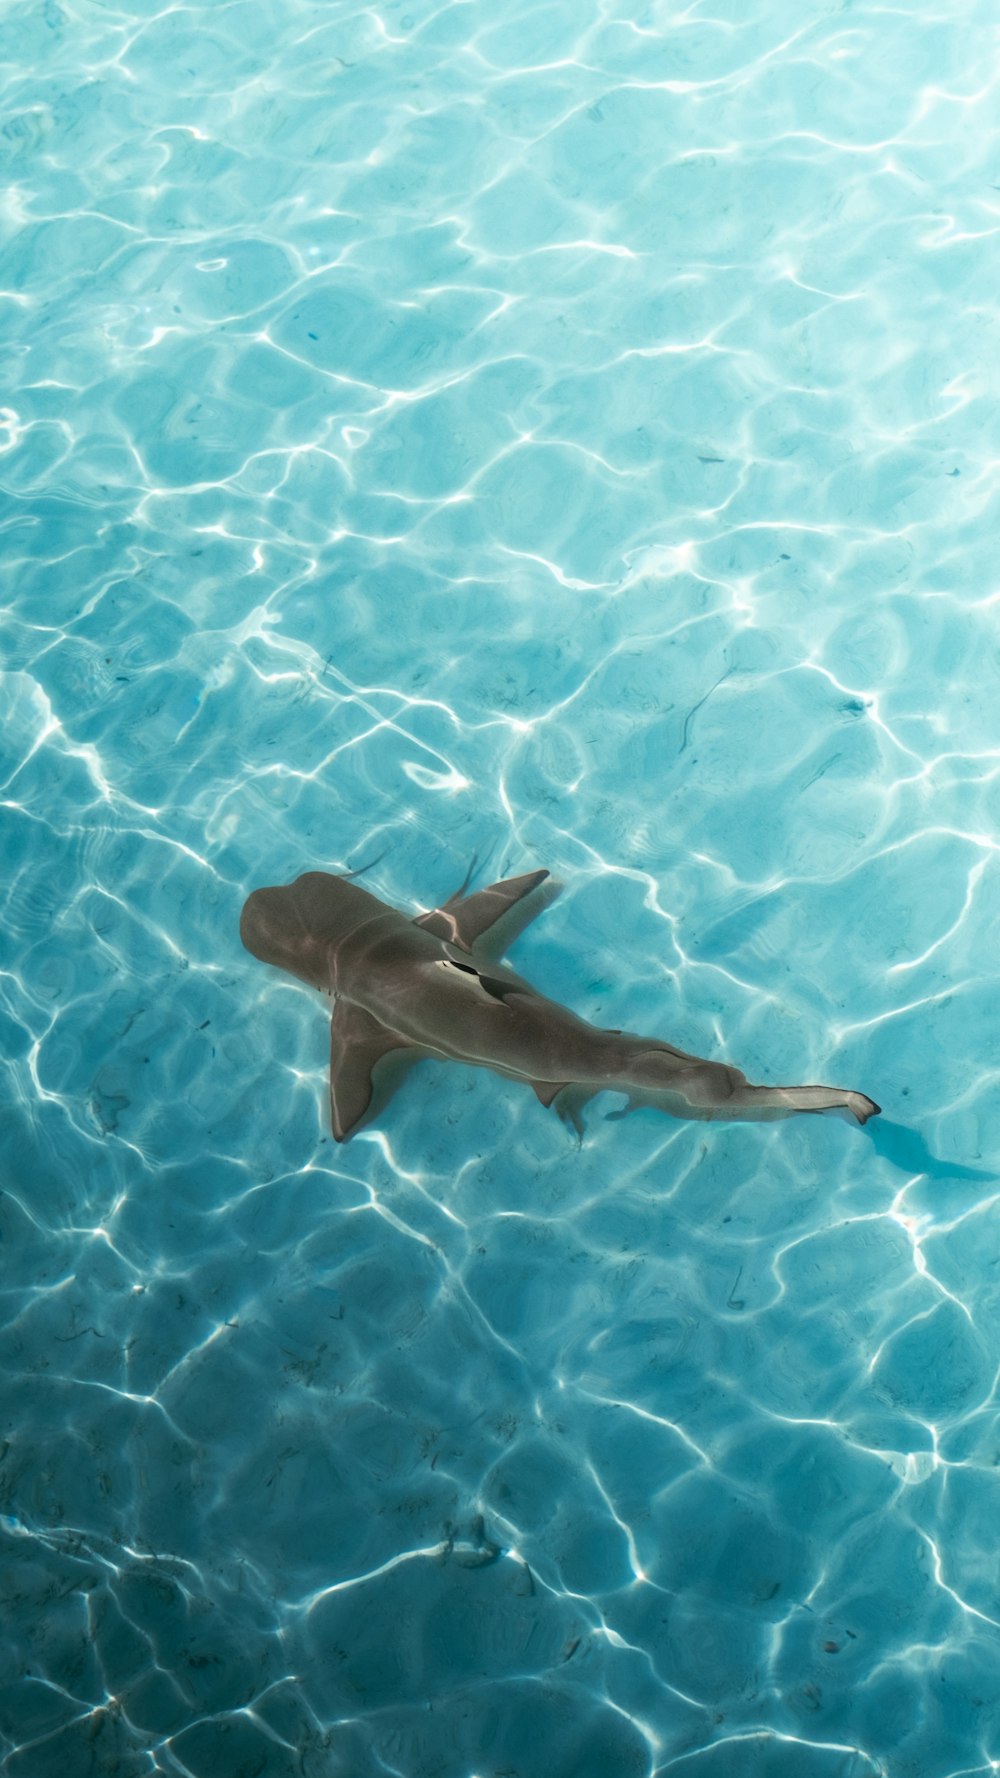 Un requin nageant dans une piscine d’eau